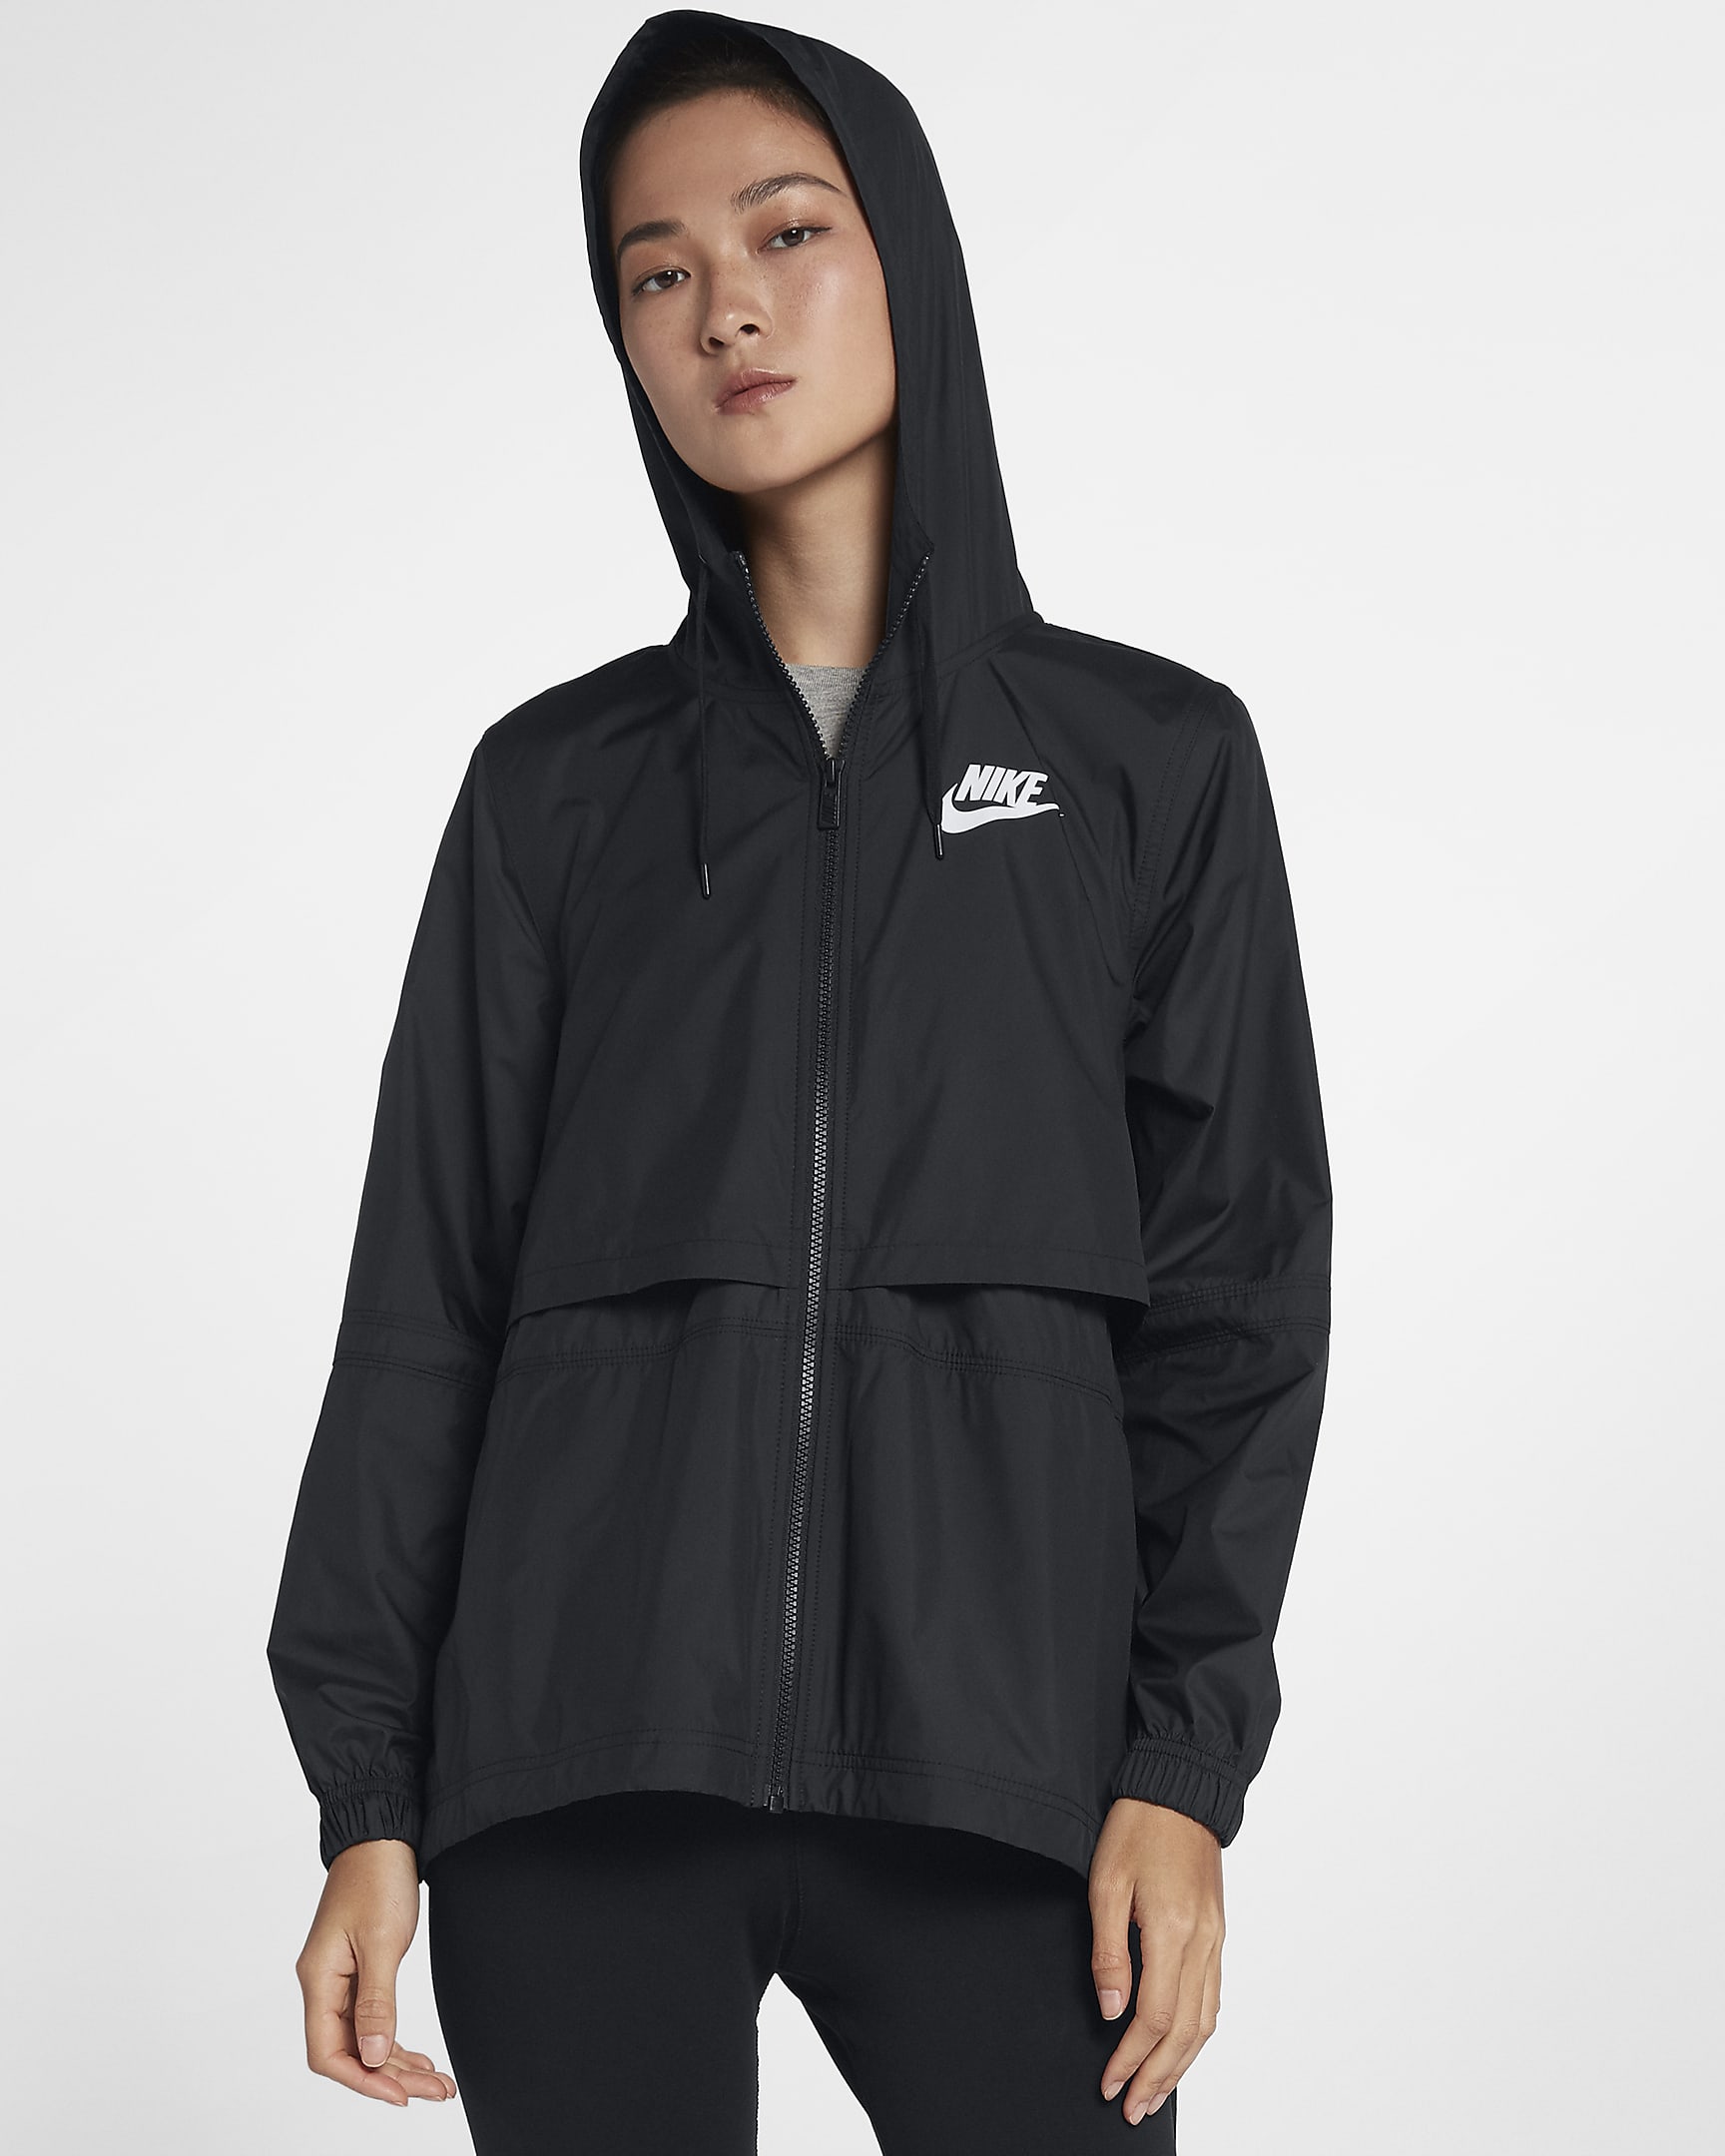 Nike Sportswear Repel Women's Woven Jacket. Nike SG